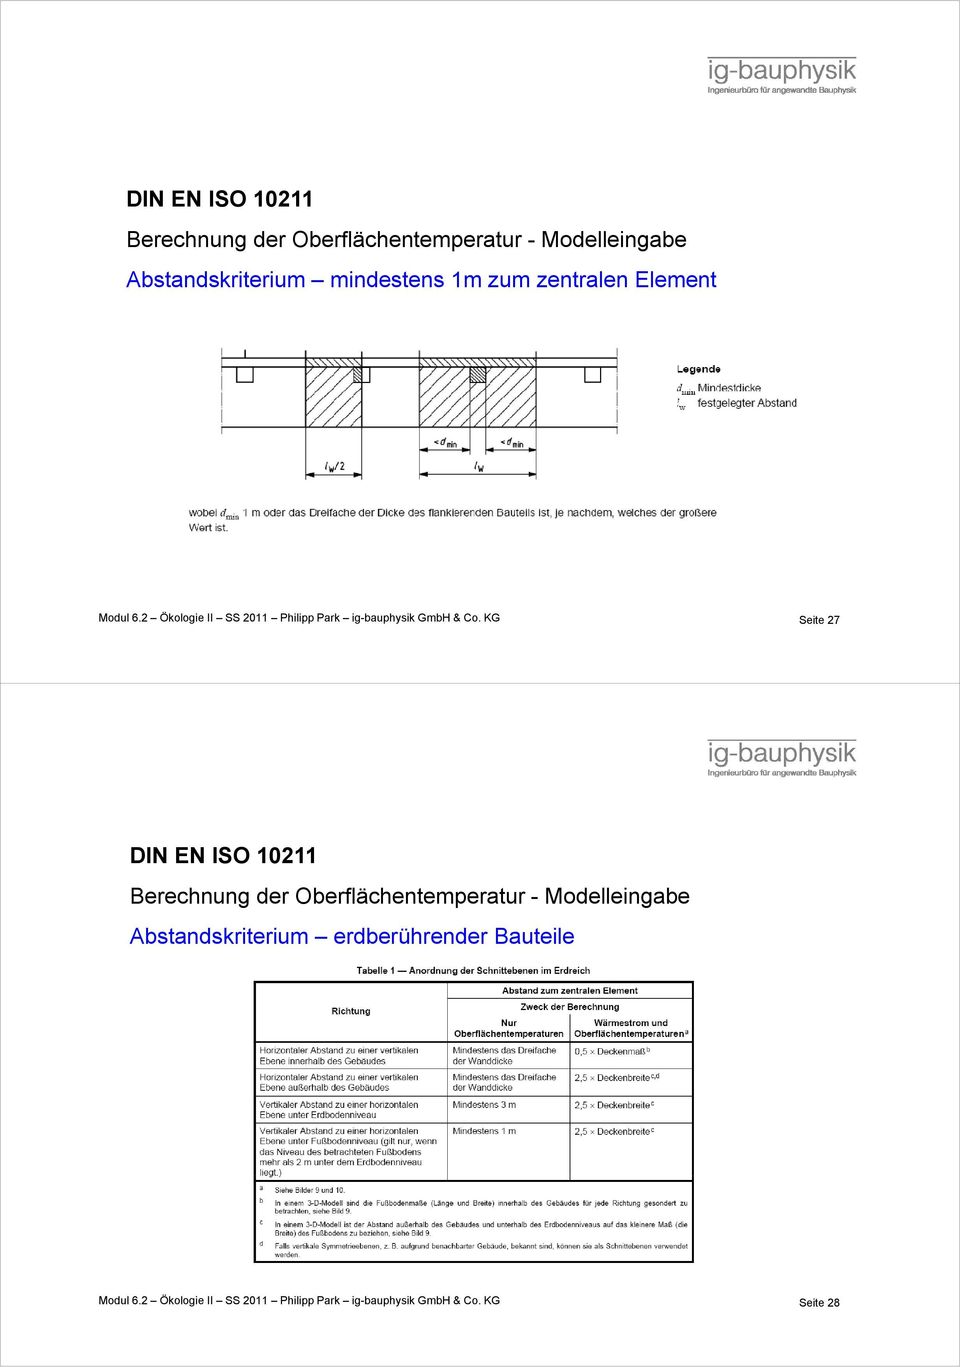 KG Seite 27 DIN EN ISO 10211 Berechnung der Oberflächentemperatur - Modelleingabe